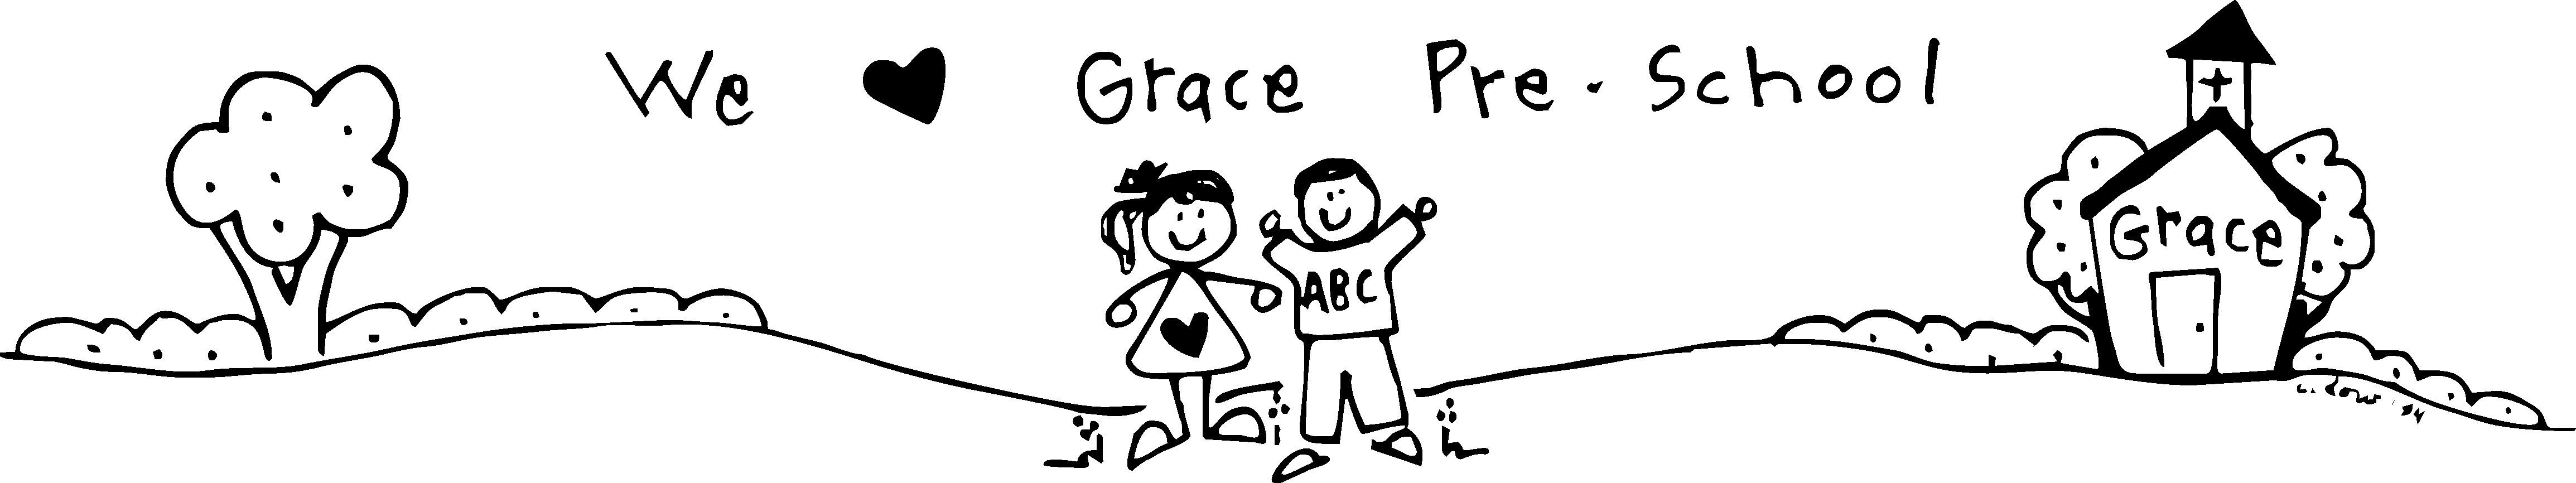 GRACE PRESCHOOL